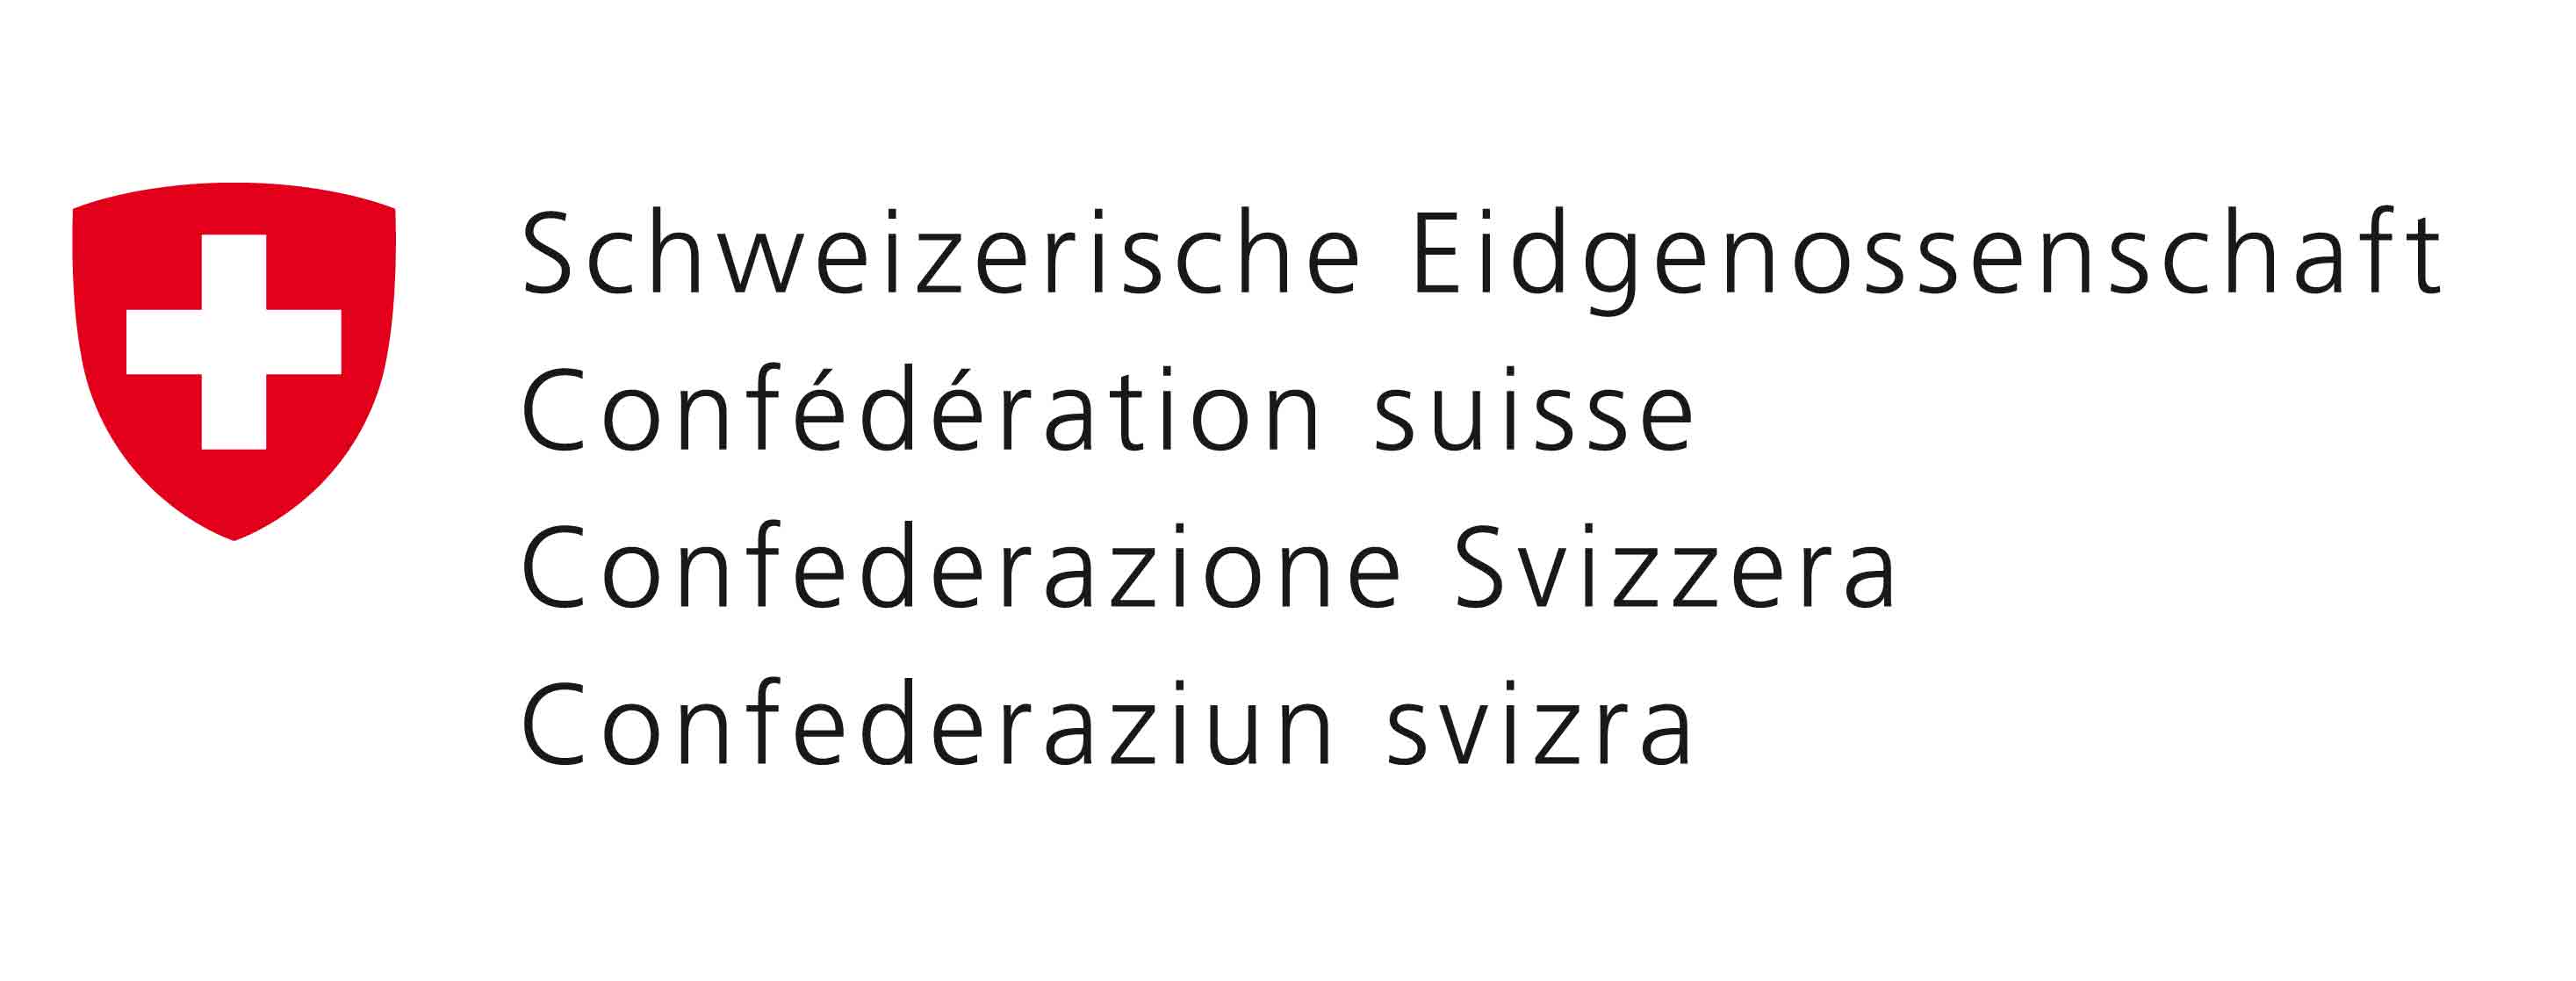 Confederation Suisse